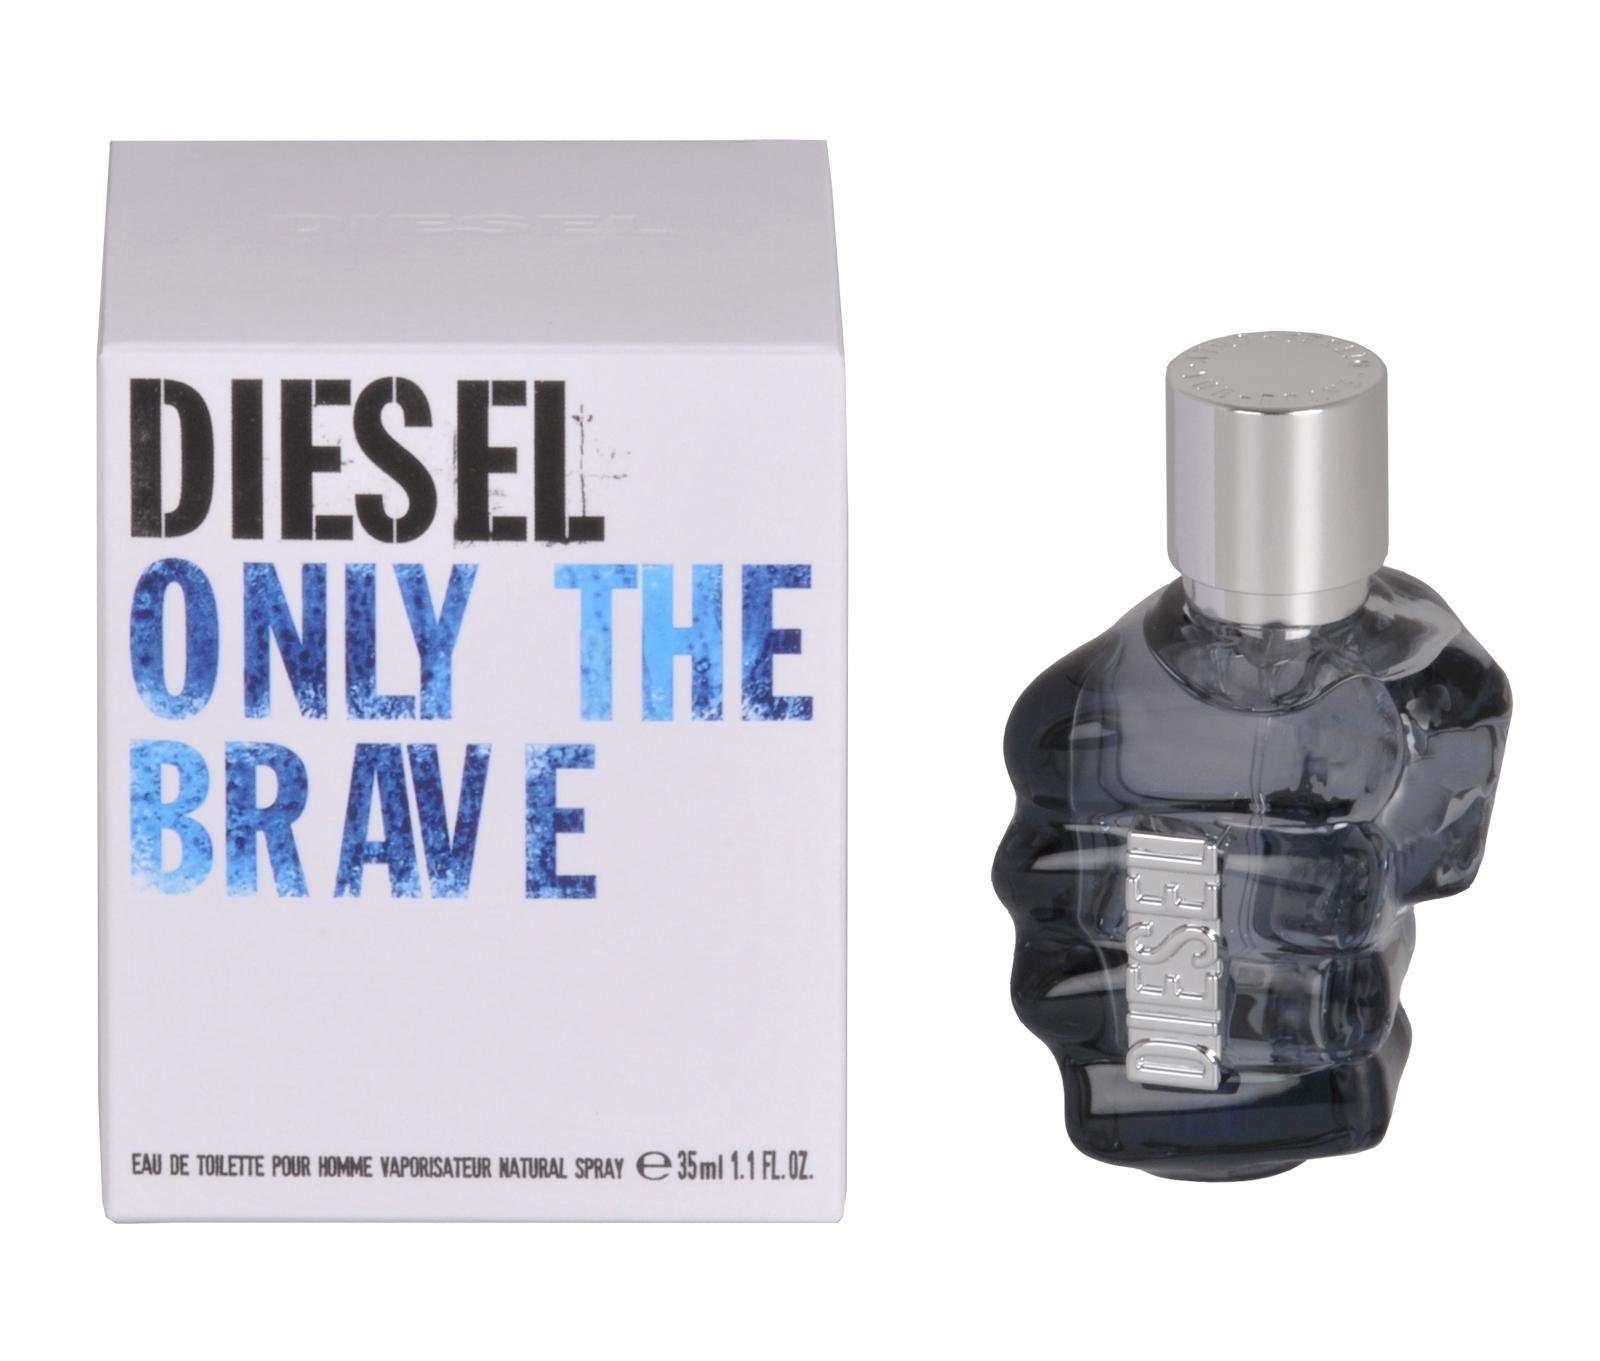 Toilette Eau de Only the Männerduft Diesel Parfum, EdT, Brave,